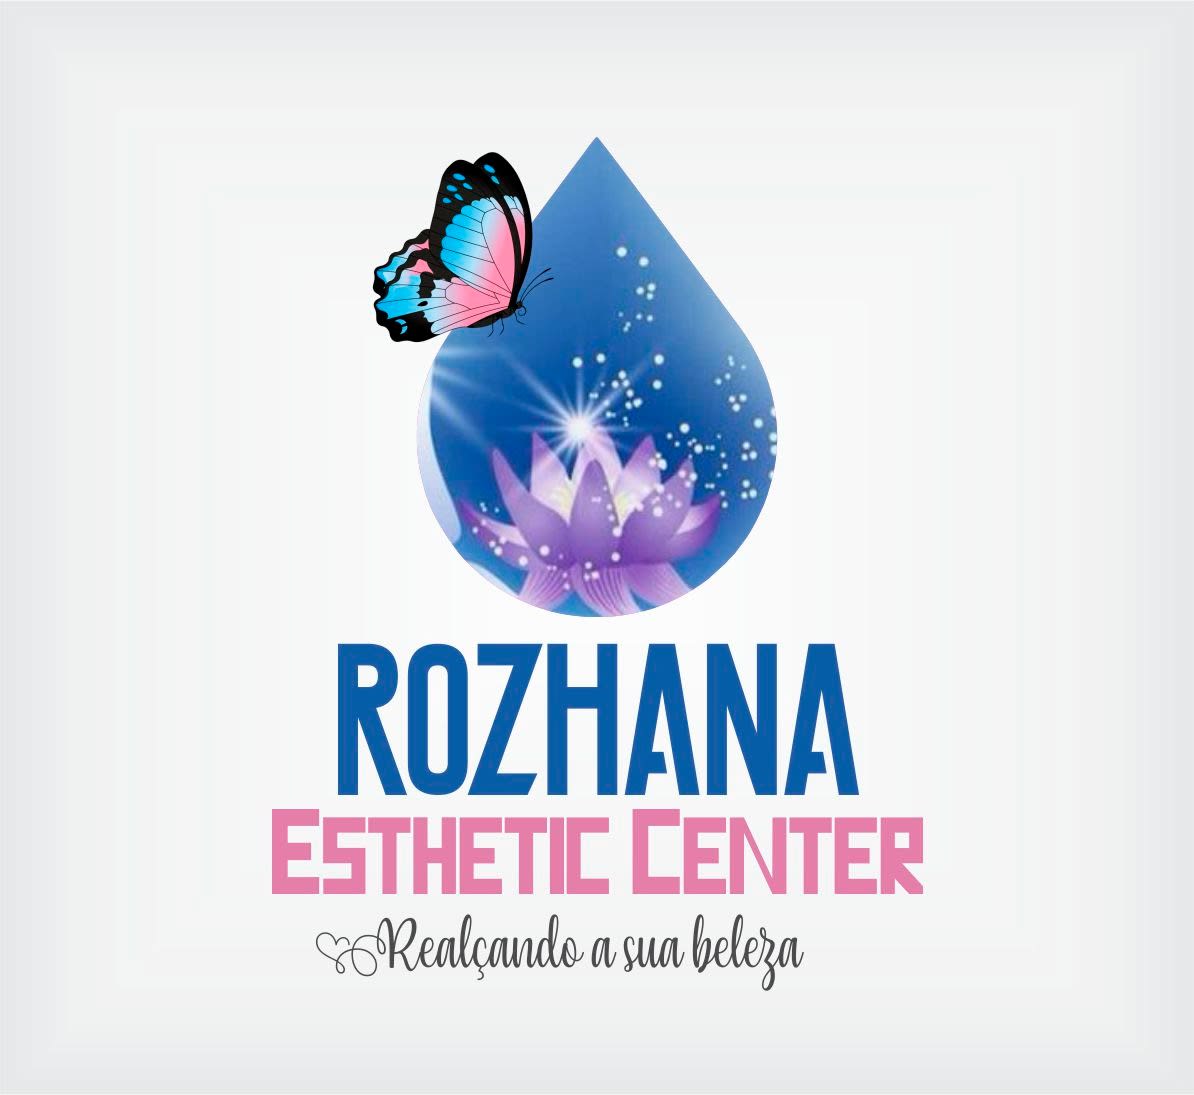 Esthetic Center Beleza Renovada